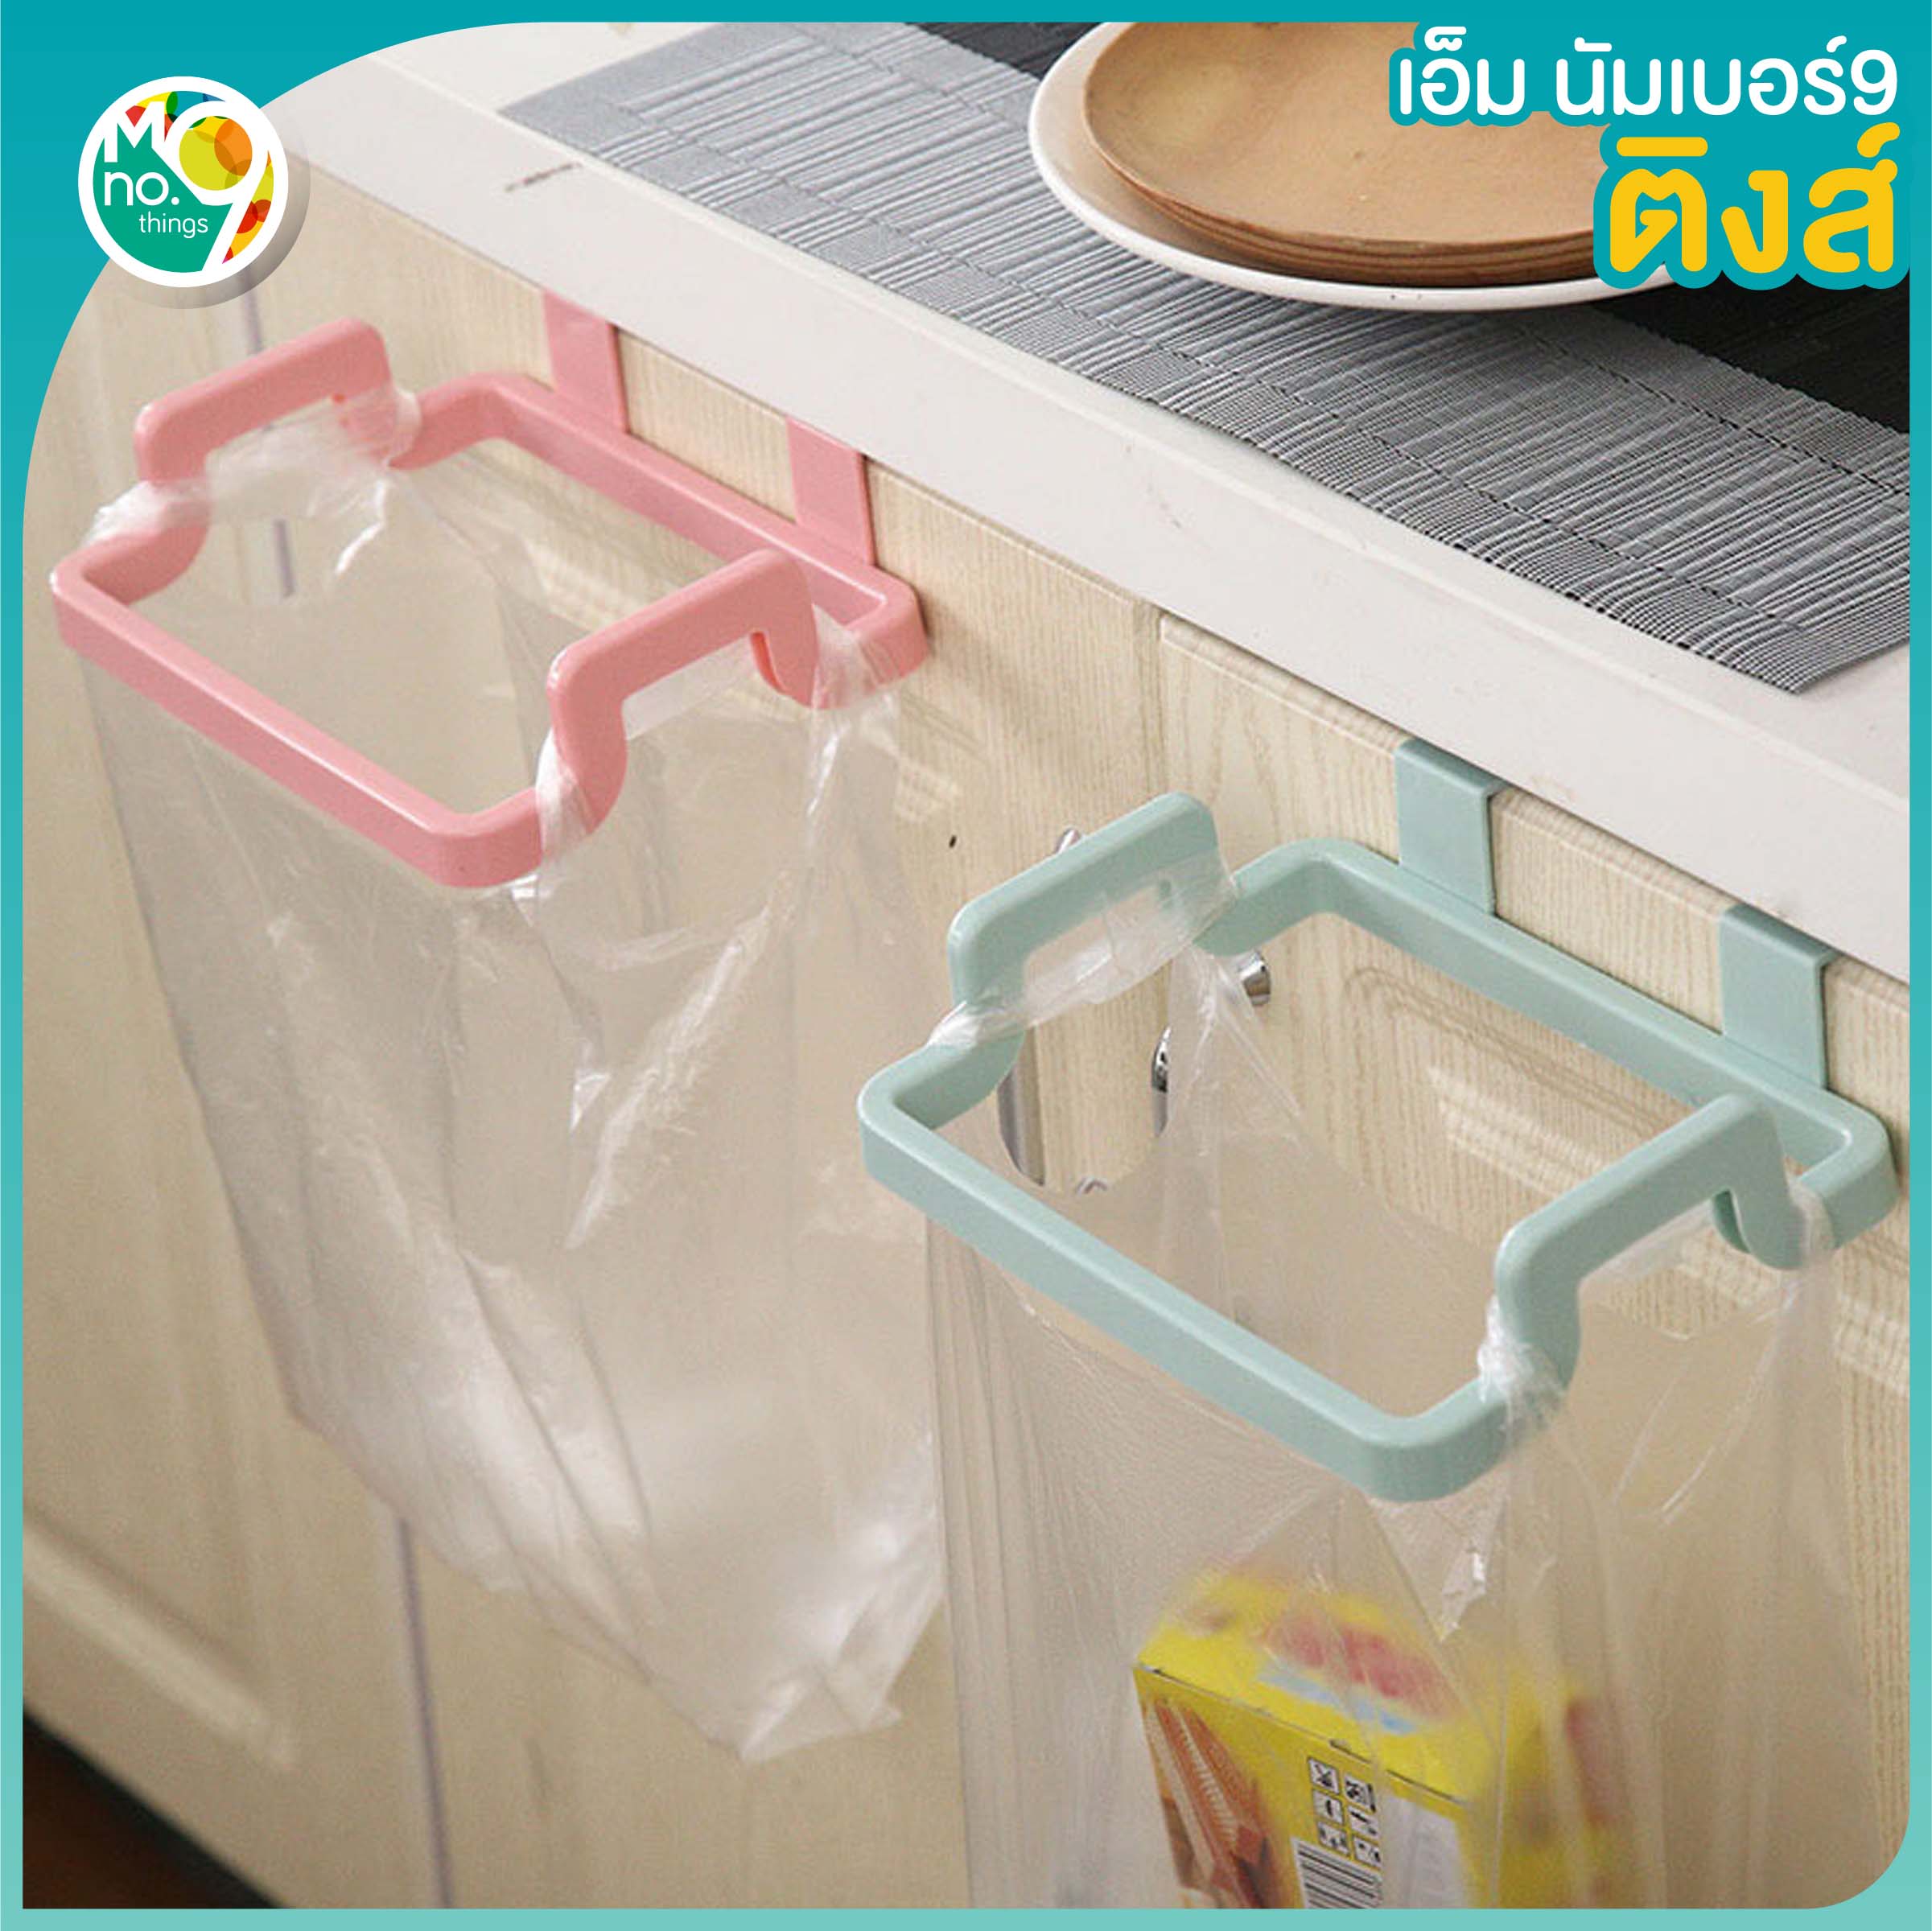 MNO.9 Things Garbage bag hanger ที่แขวนถุงขยะ ถังขยะ ในครัว ที่แขวนกับบานตู้ แขวนผ้า ที่ห้อยถุงขยะพลาสติก แขวนผ้า แขวนเอนกประสงค์